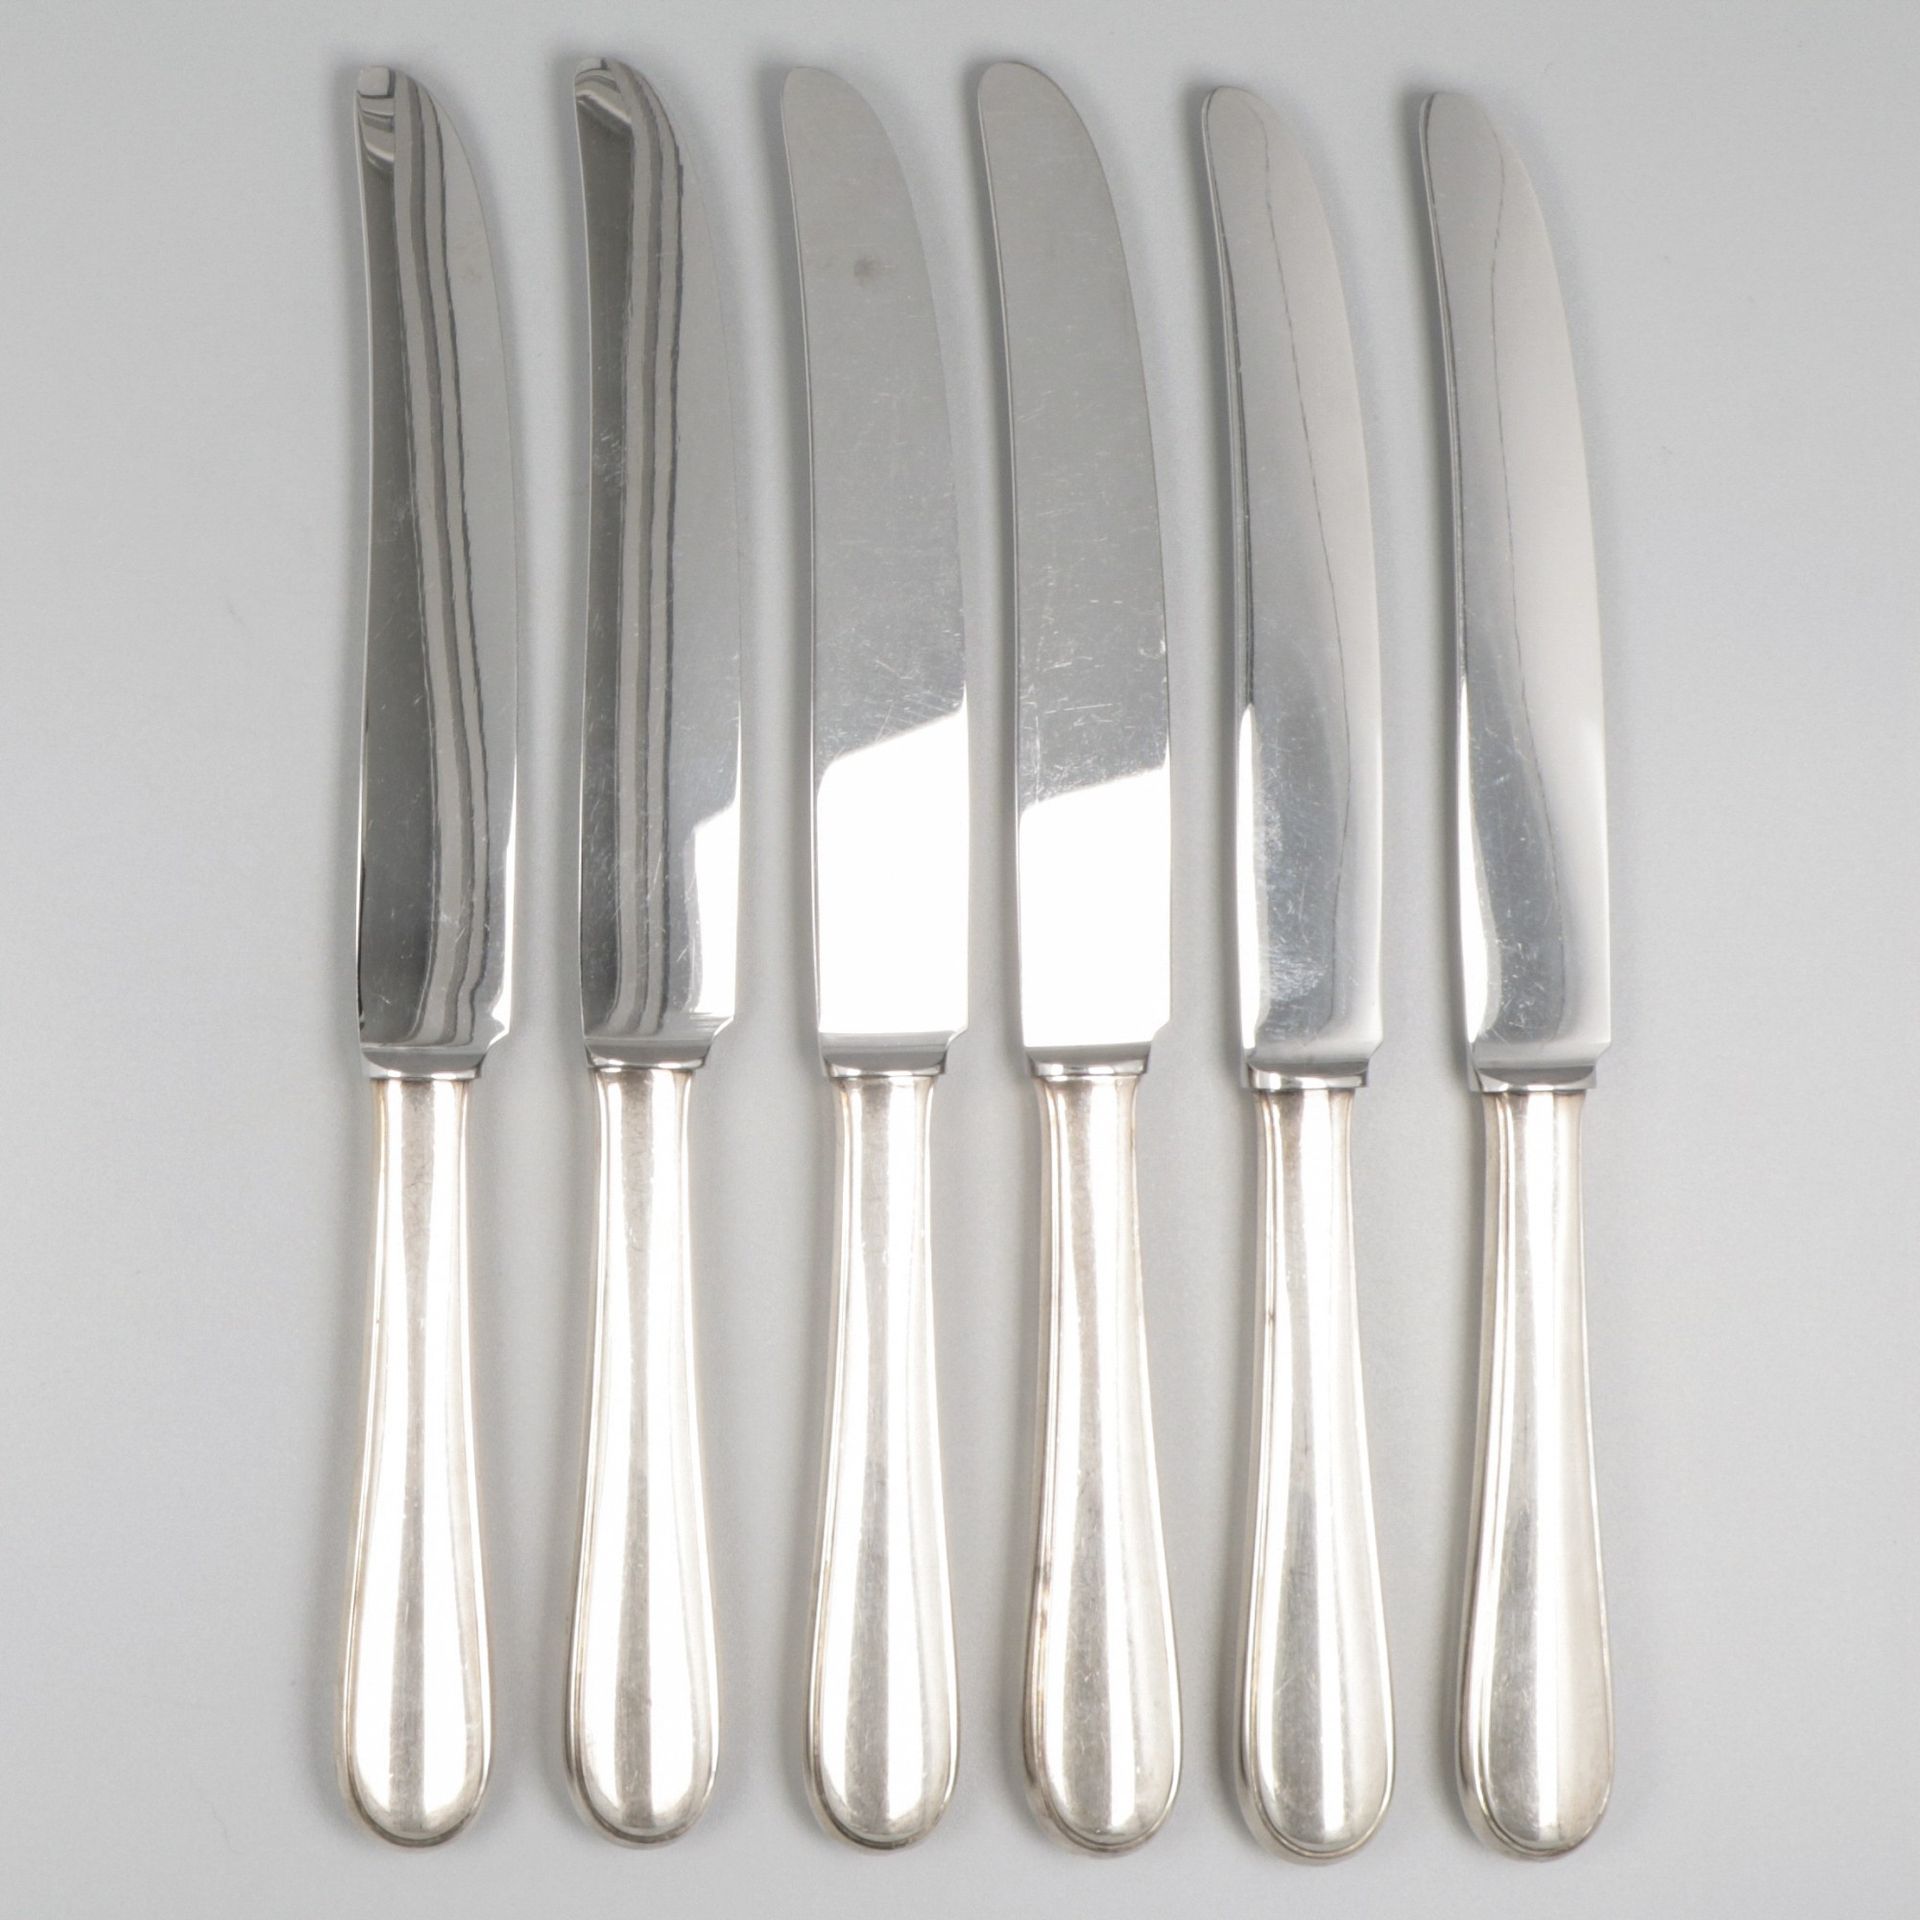 6-piece set dinner knives silver. "Hollands Glad" o holandesa lisa. Mangos relle&hellip;